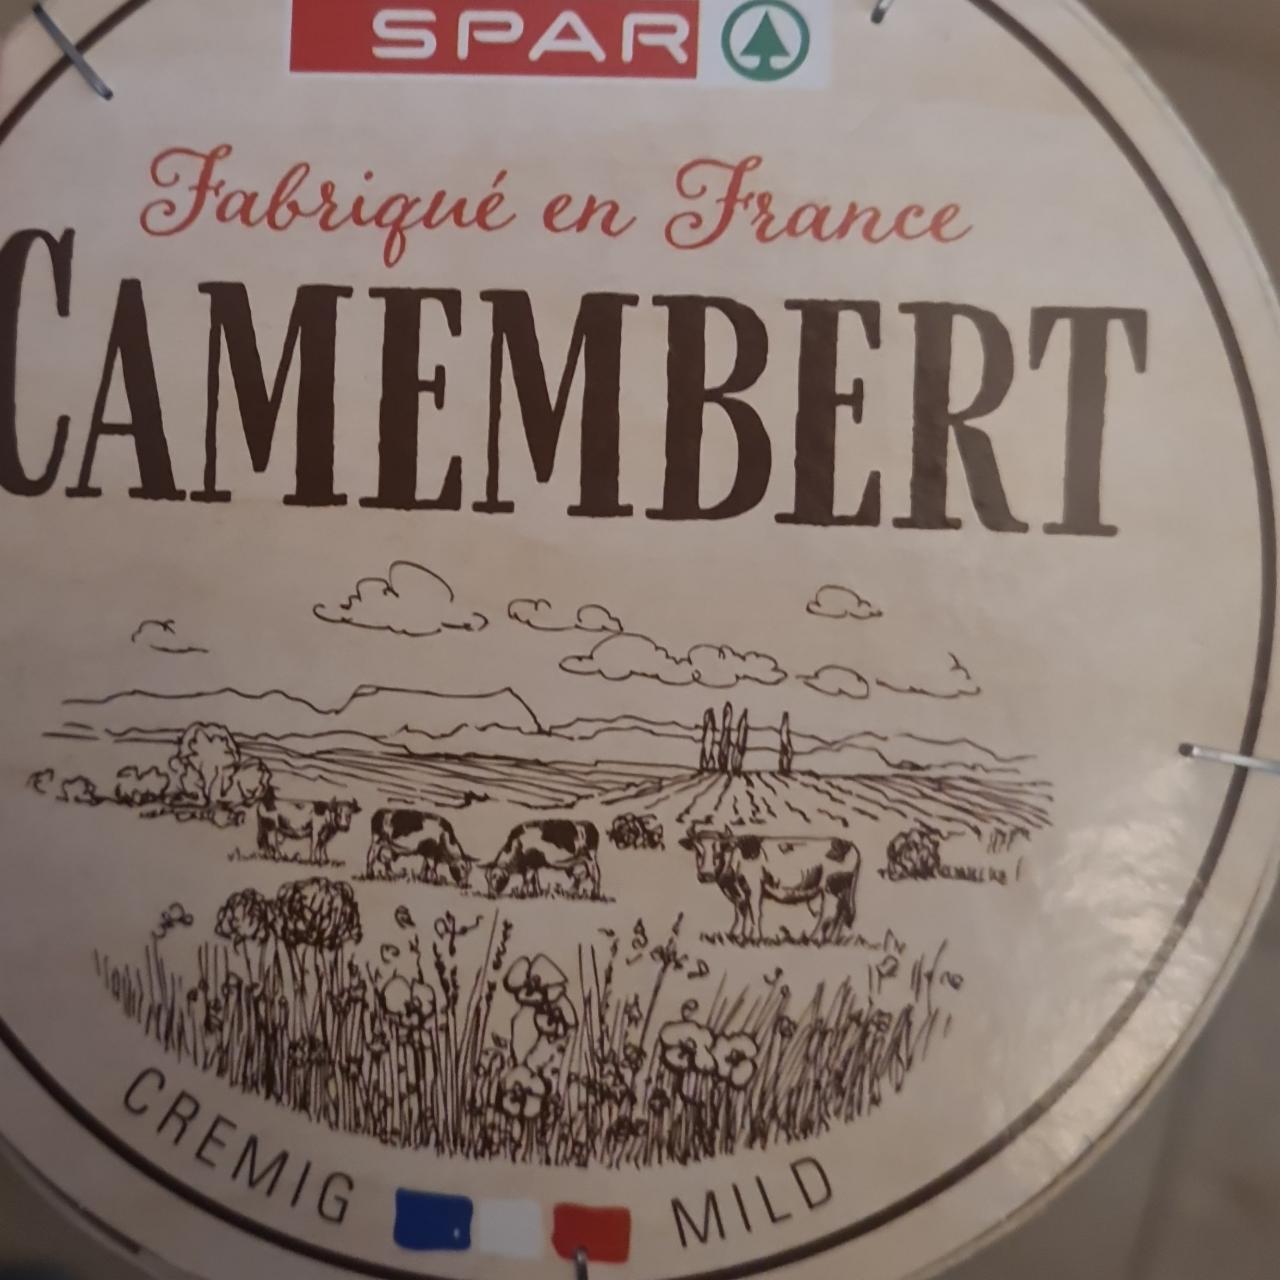 Fotografie - Camembert Fabriqué en France Spar